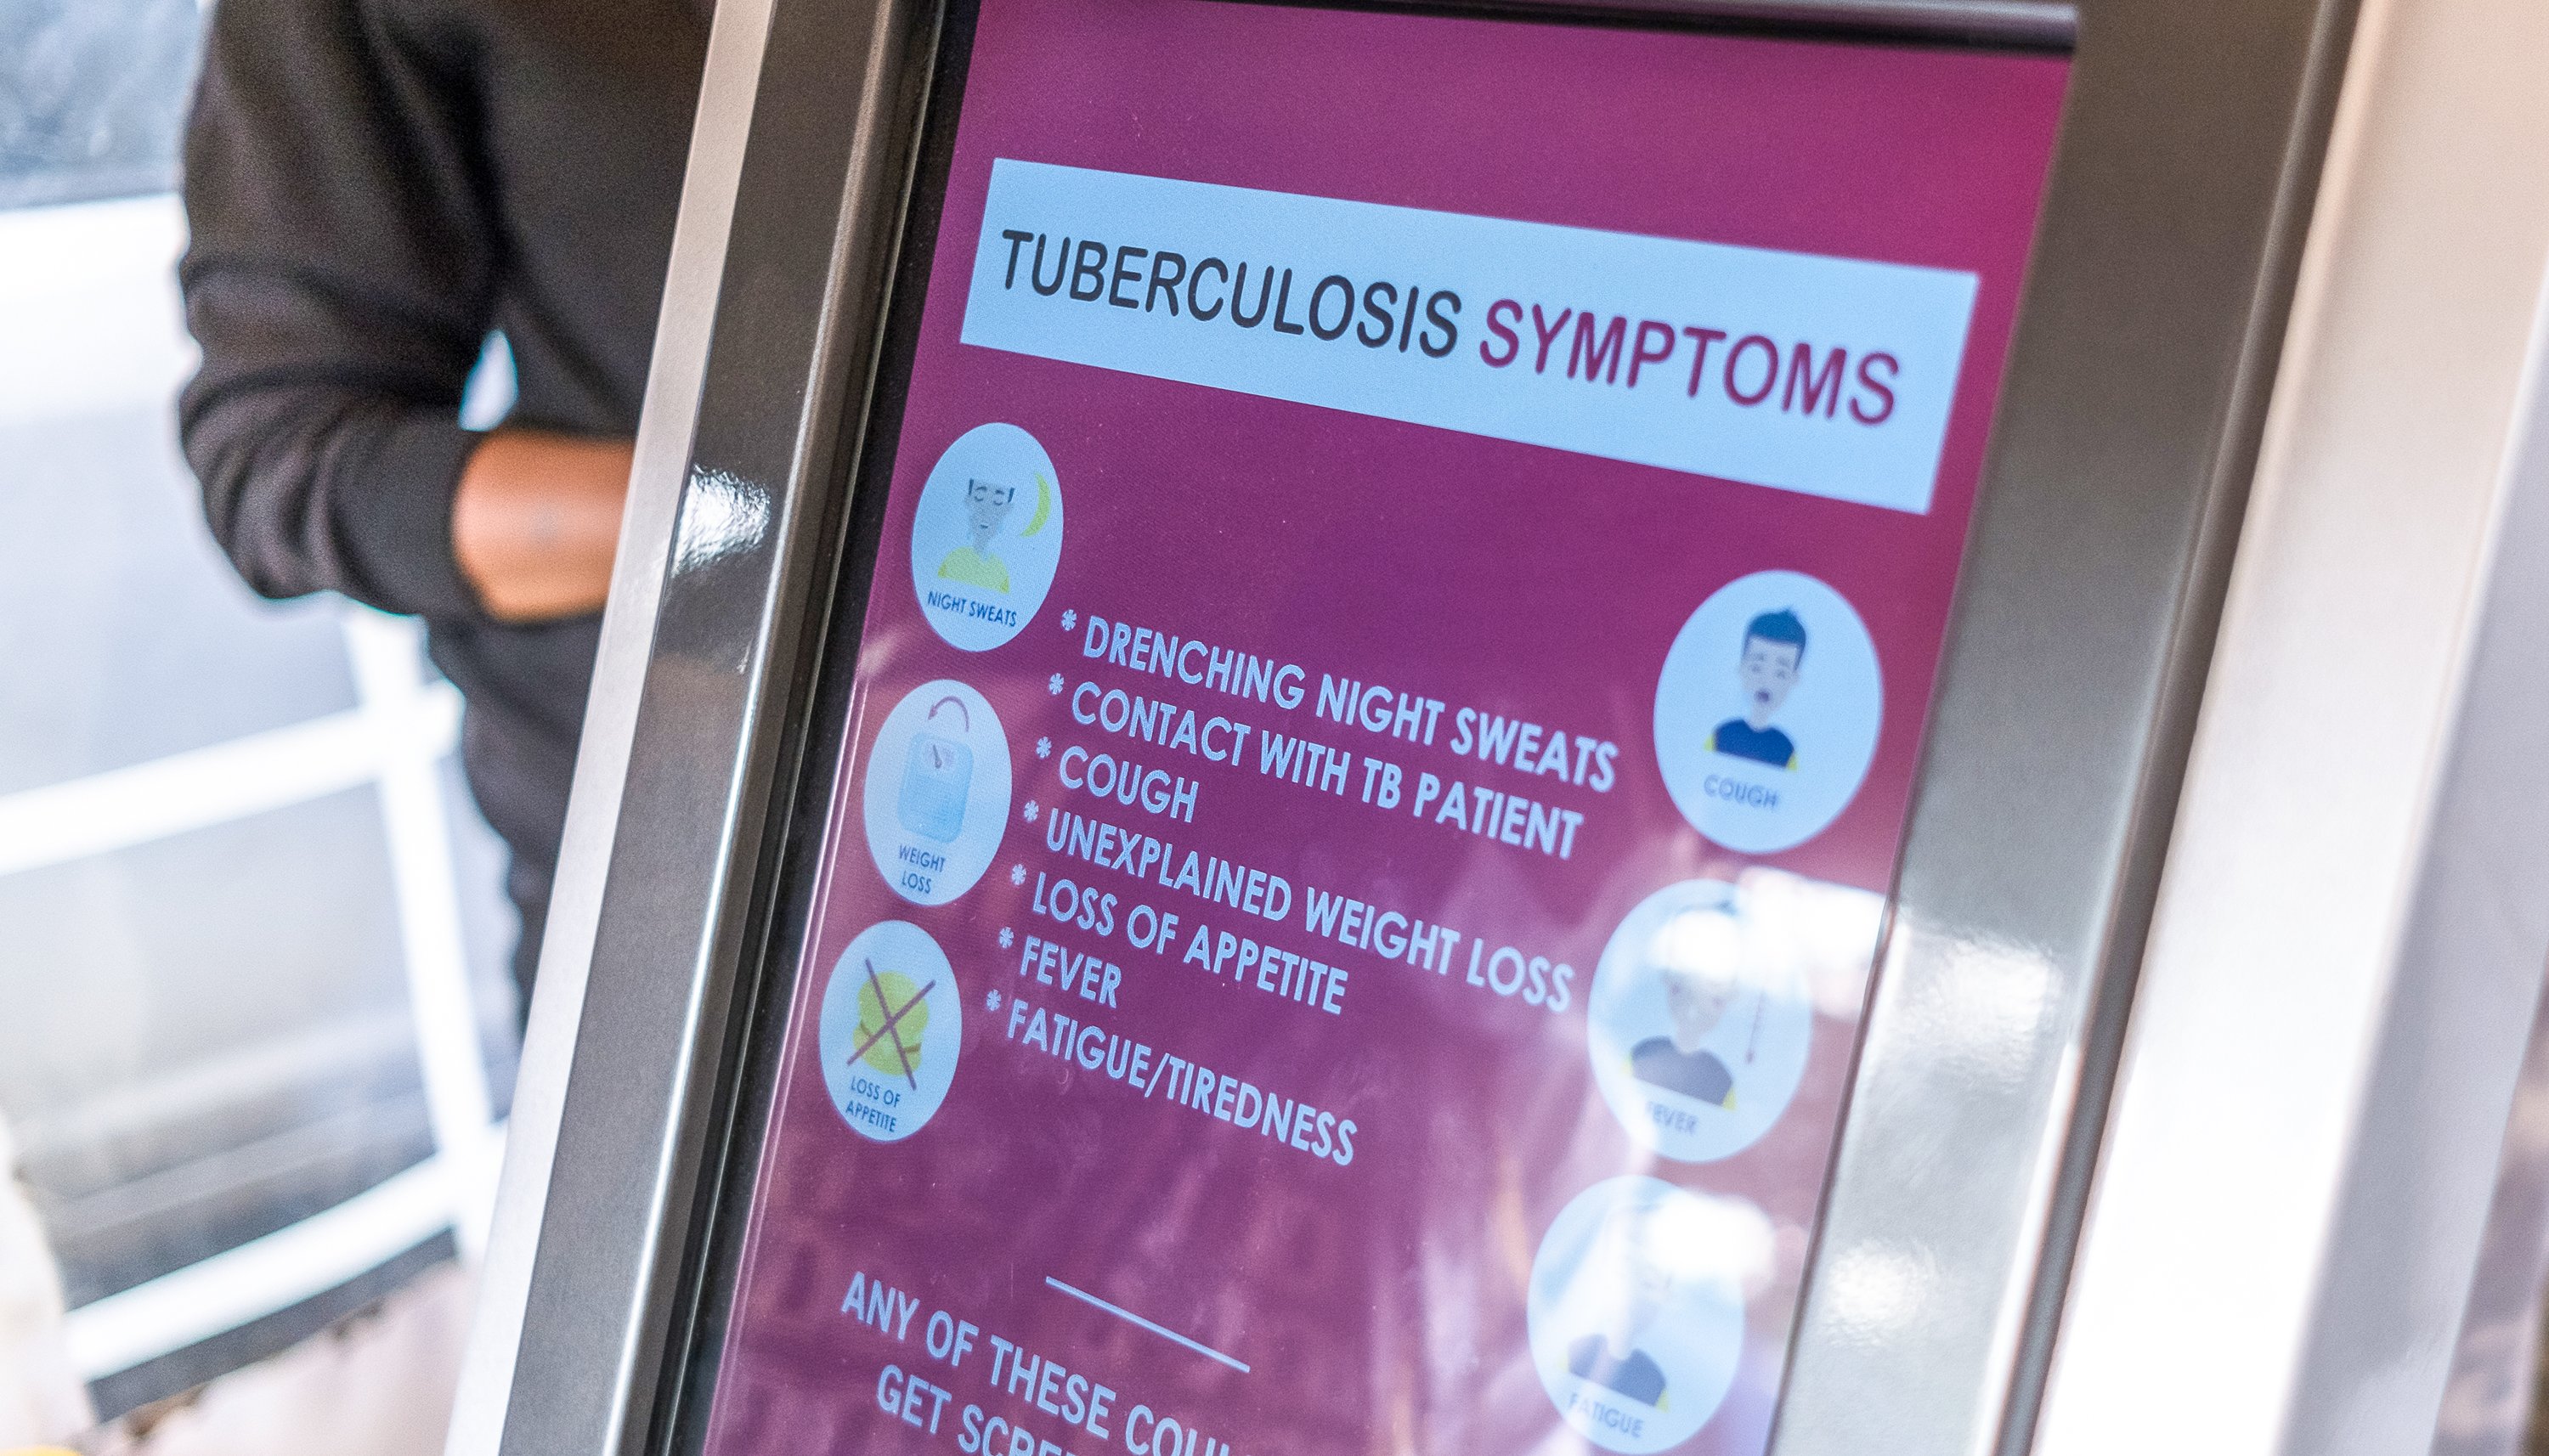 Read Outils pour accélérer la lutte contre la tuberculose by The Global Fund